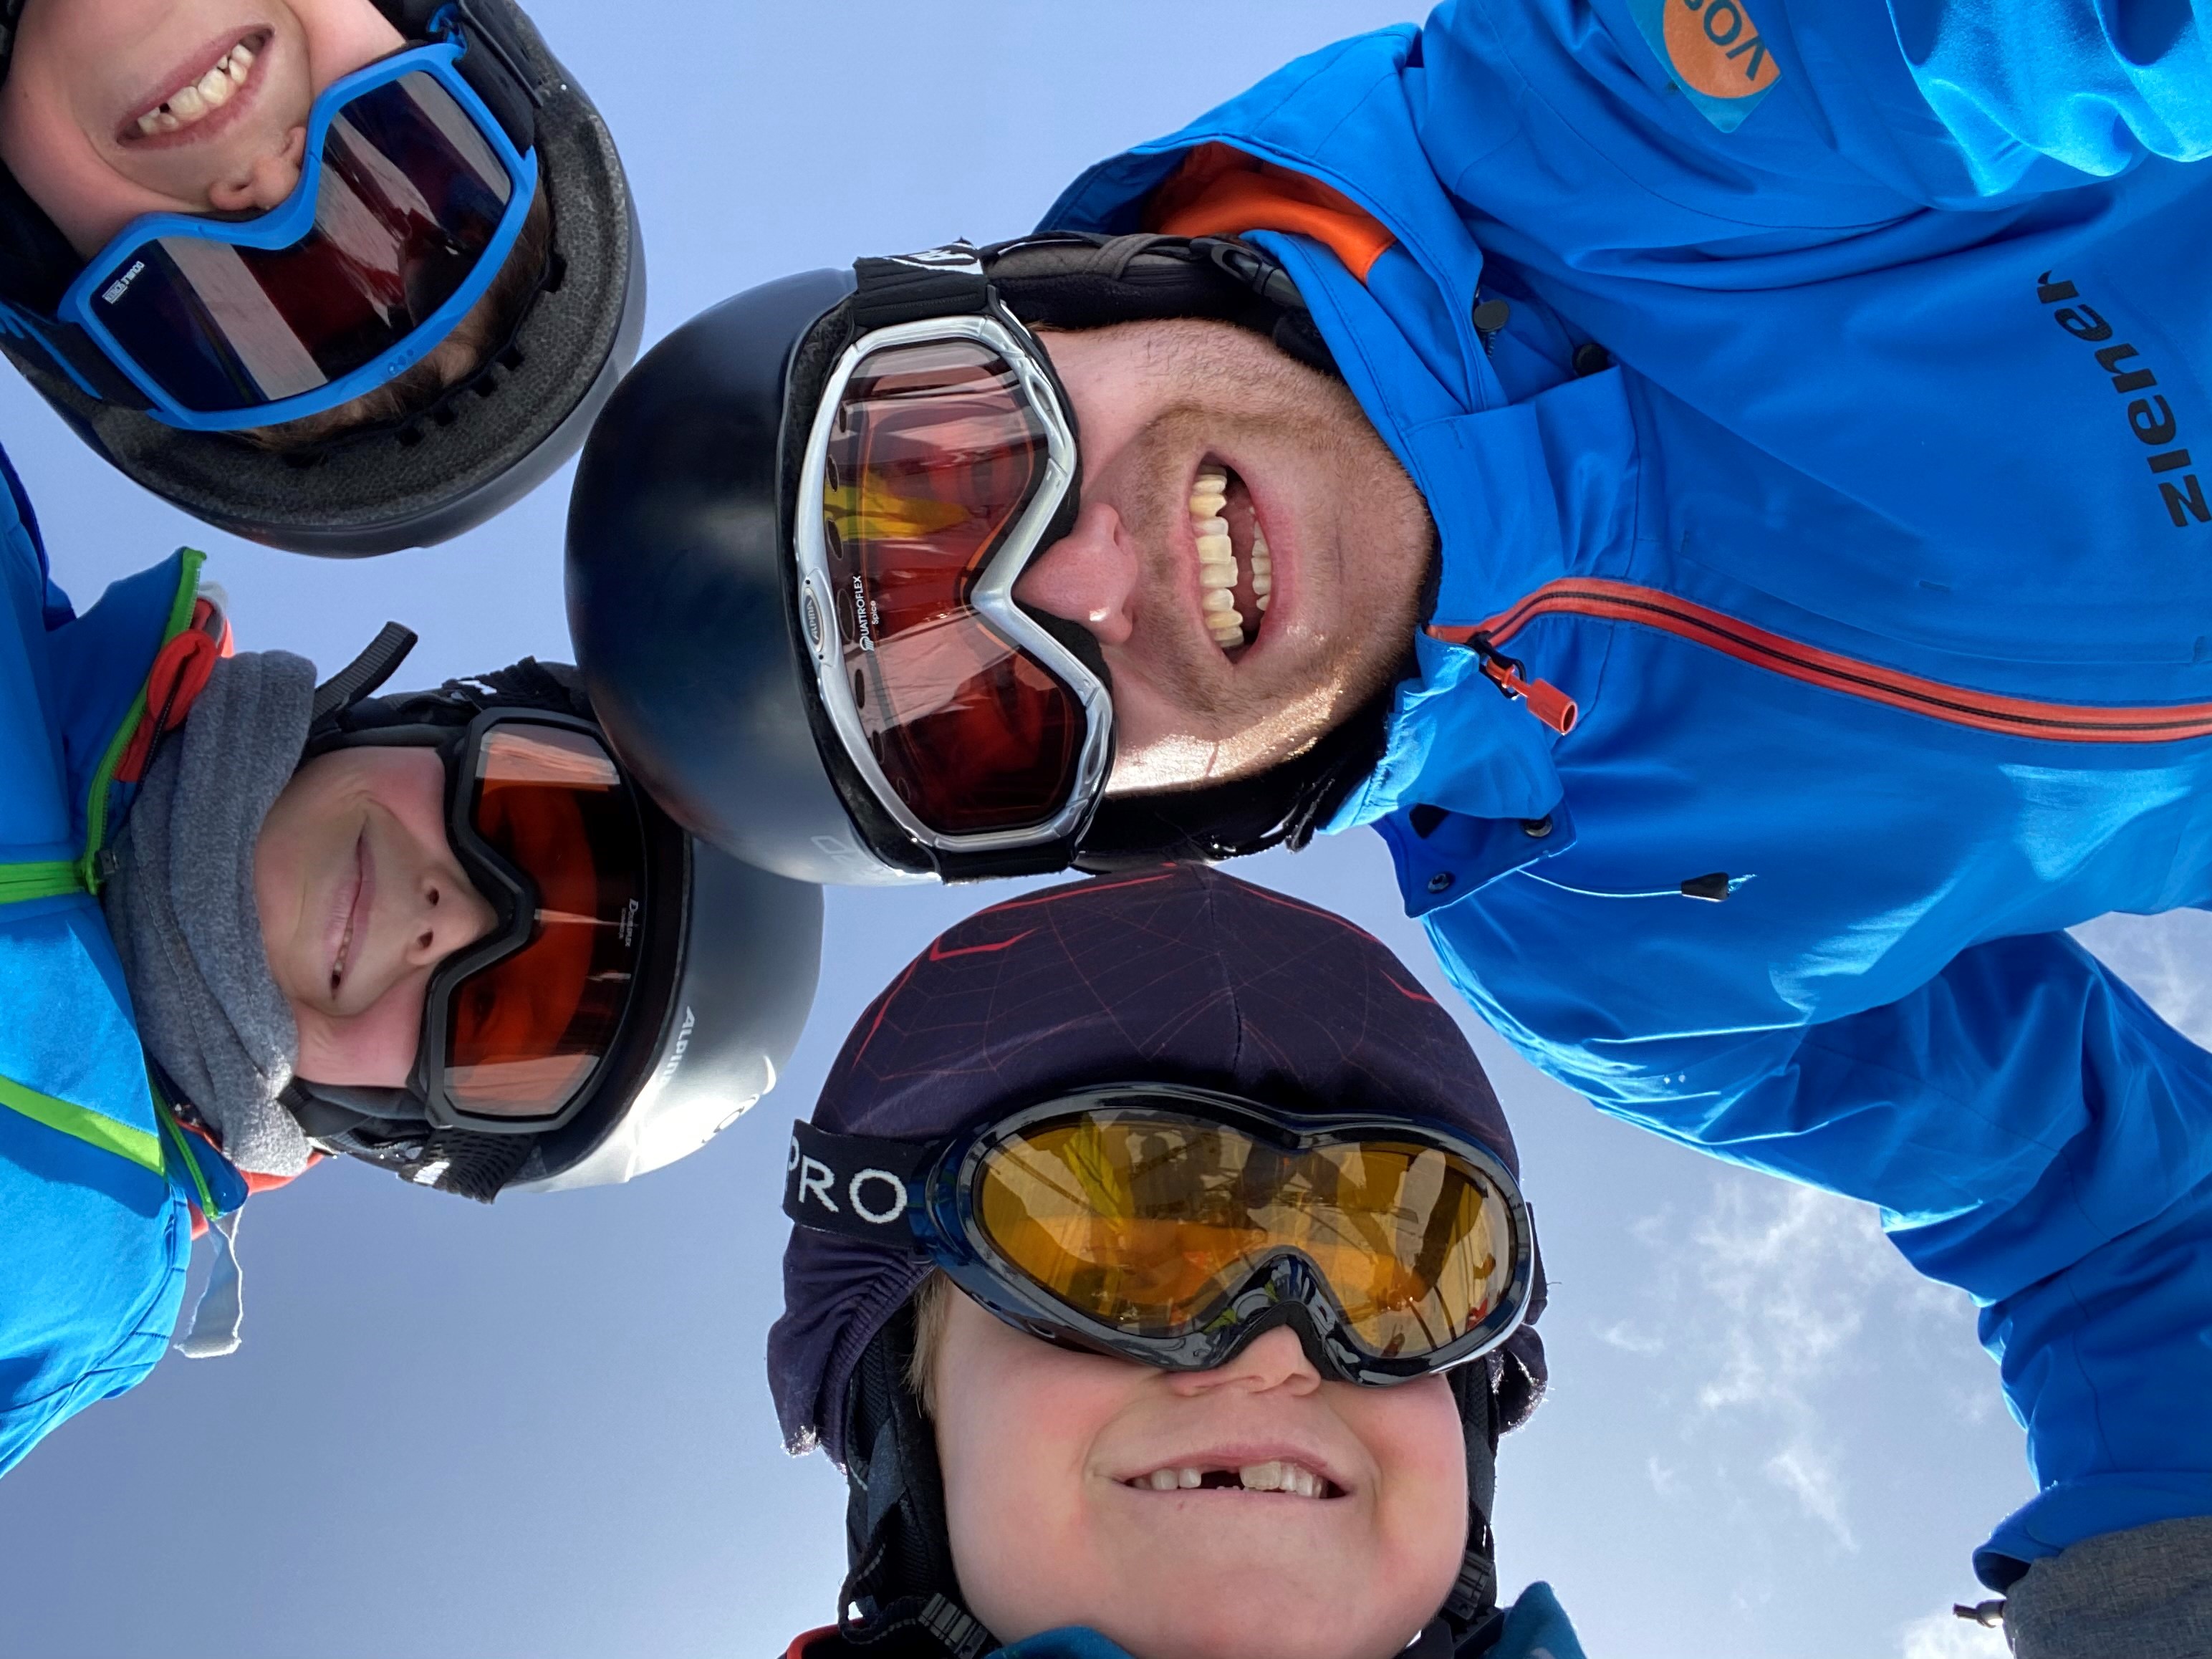 VOS Travel - Skilessen voor jeugd en volwassenen